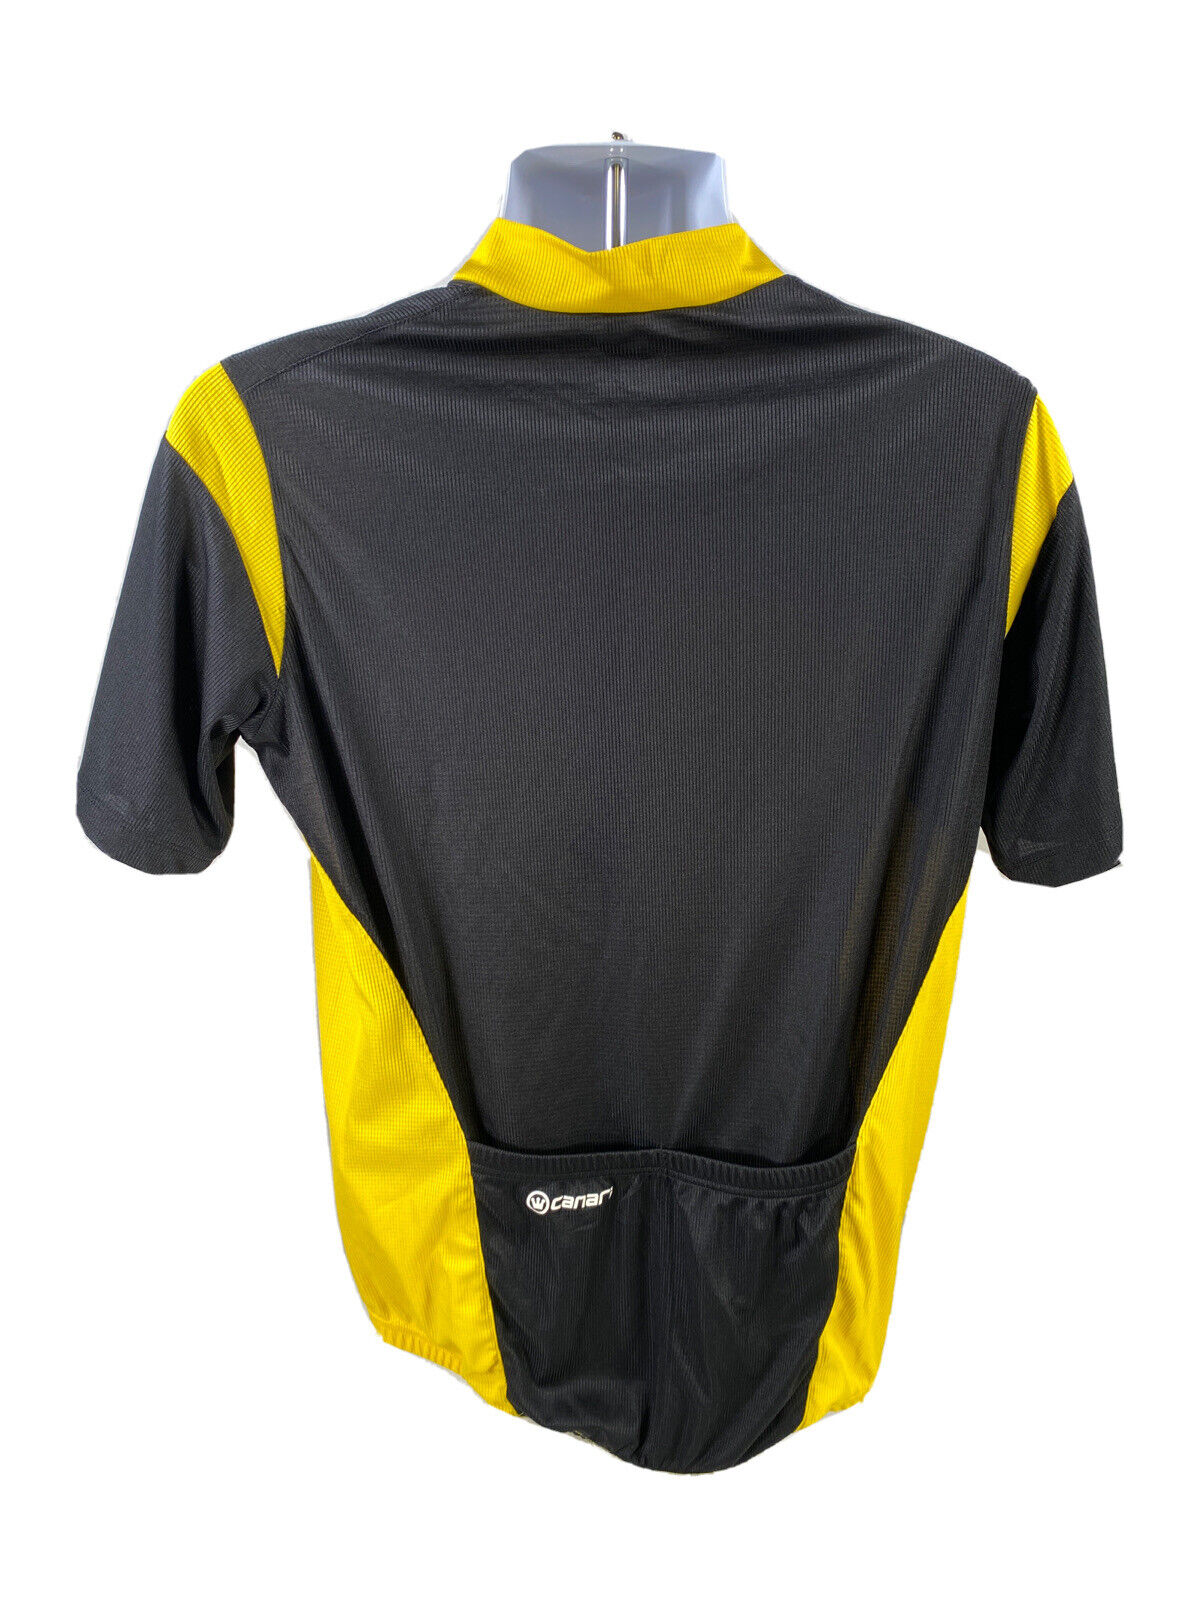 Maillot ciclista Canari de manga corta y cremallera completa, color amarillo, para hombre - L